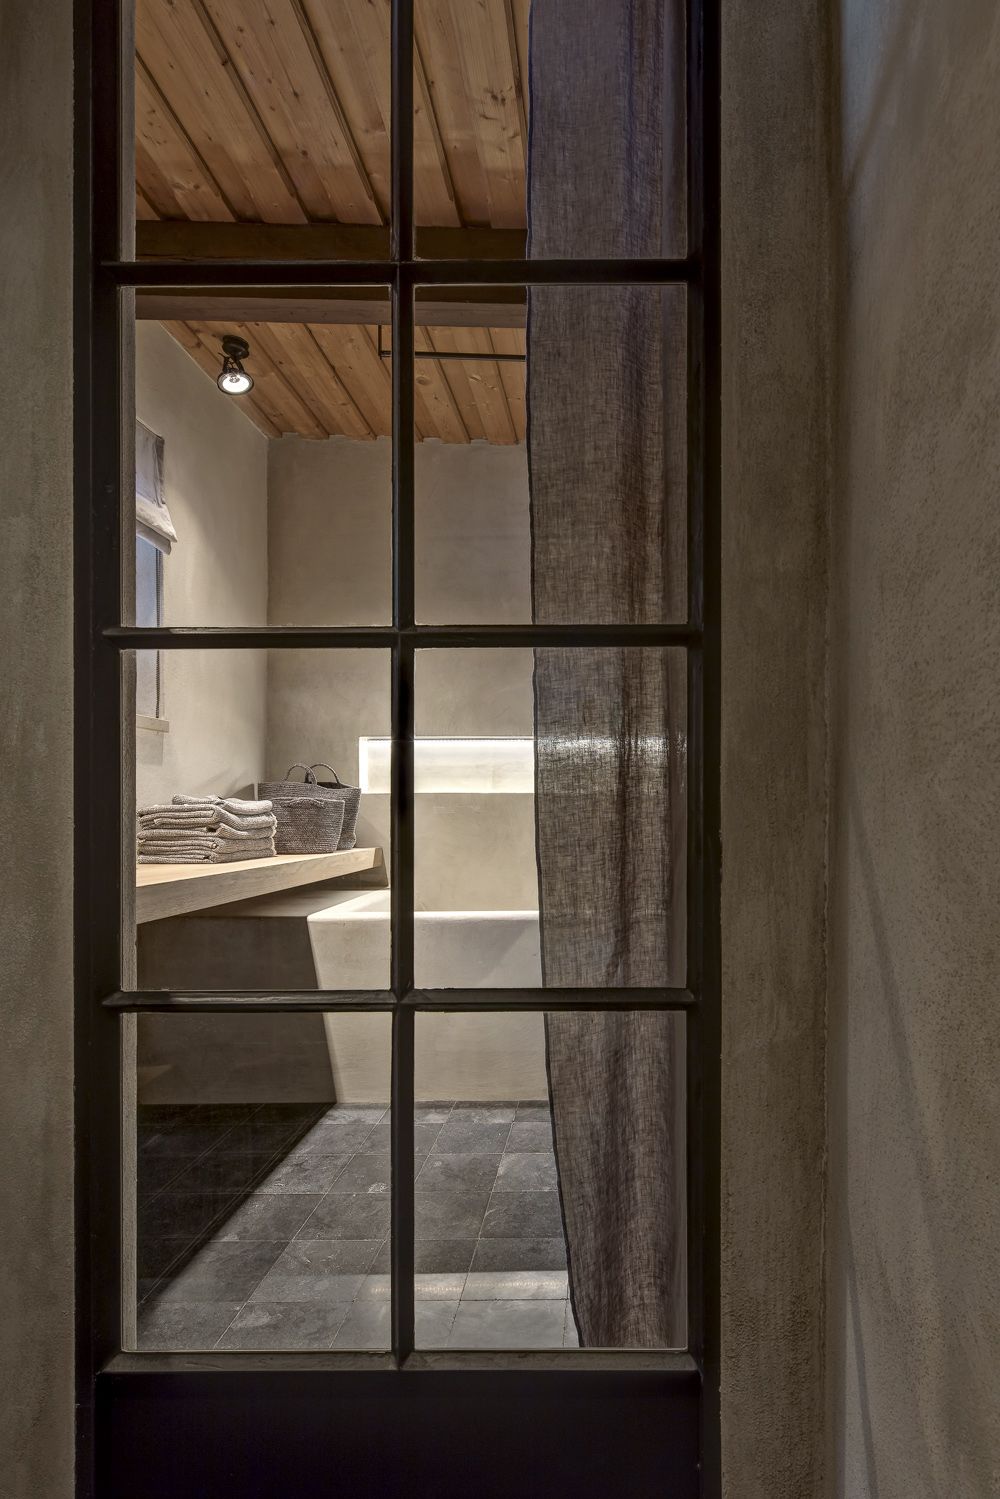 Díky velkému oknu, které představuje nejen praktický, ale i rafinovaný estetický prvek, je vidět až do koupelny. 